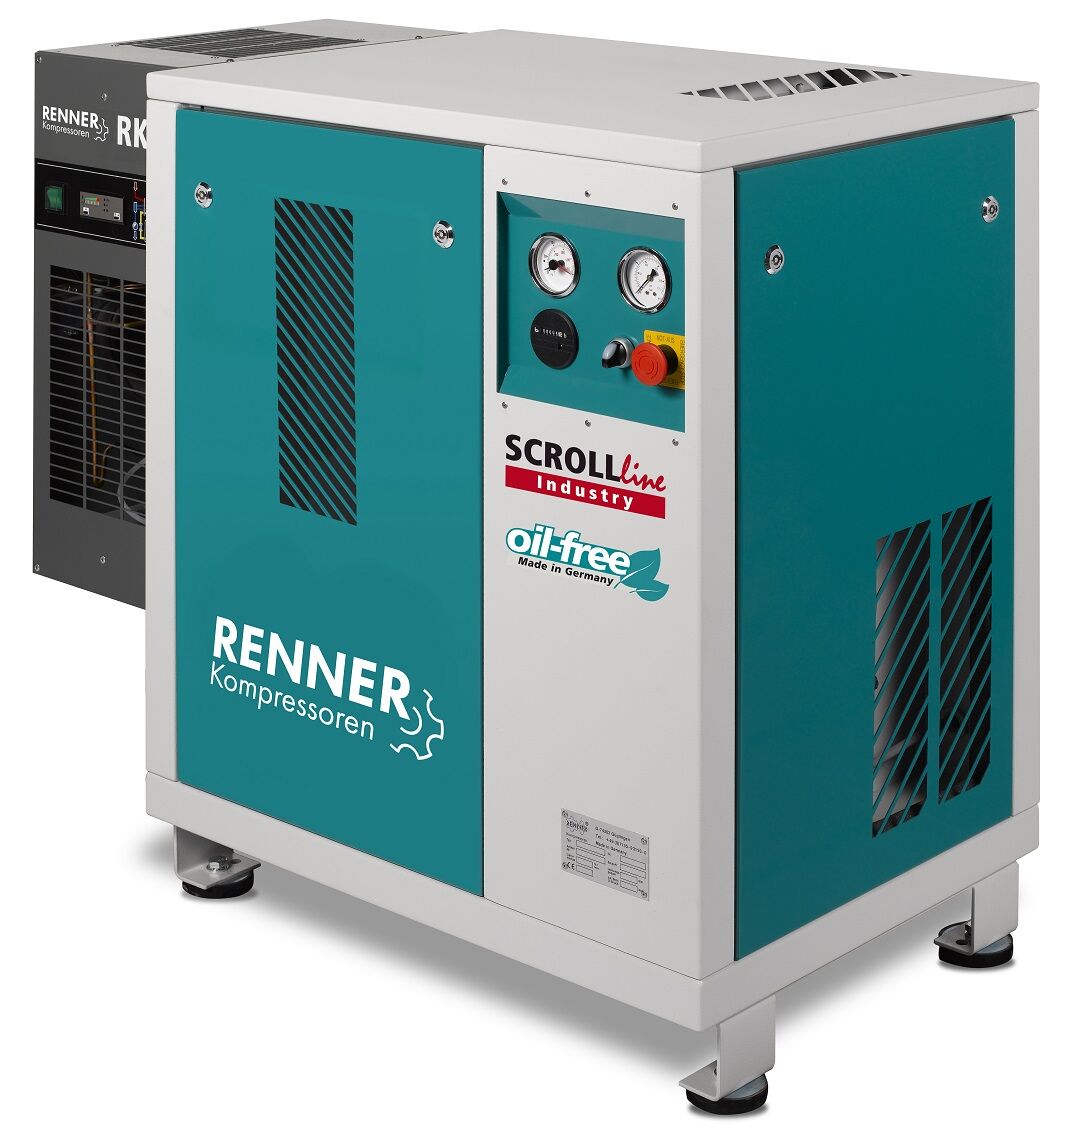 RENNER-Kompressor SLK-I 2,2 mit Kältetrockner - Industry ölfreier Scrollkompressor